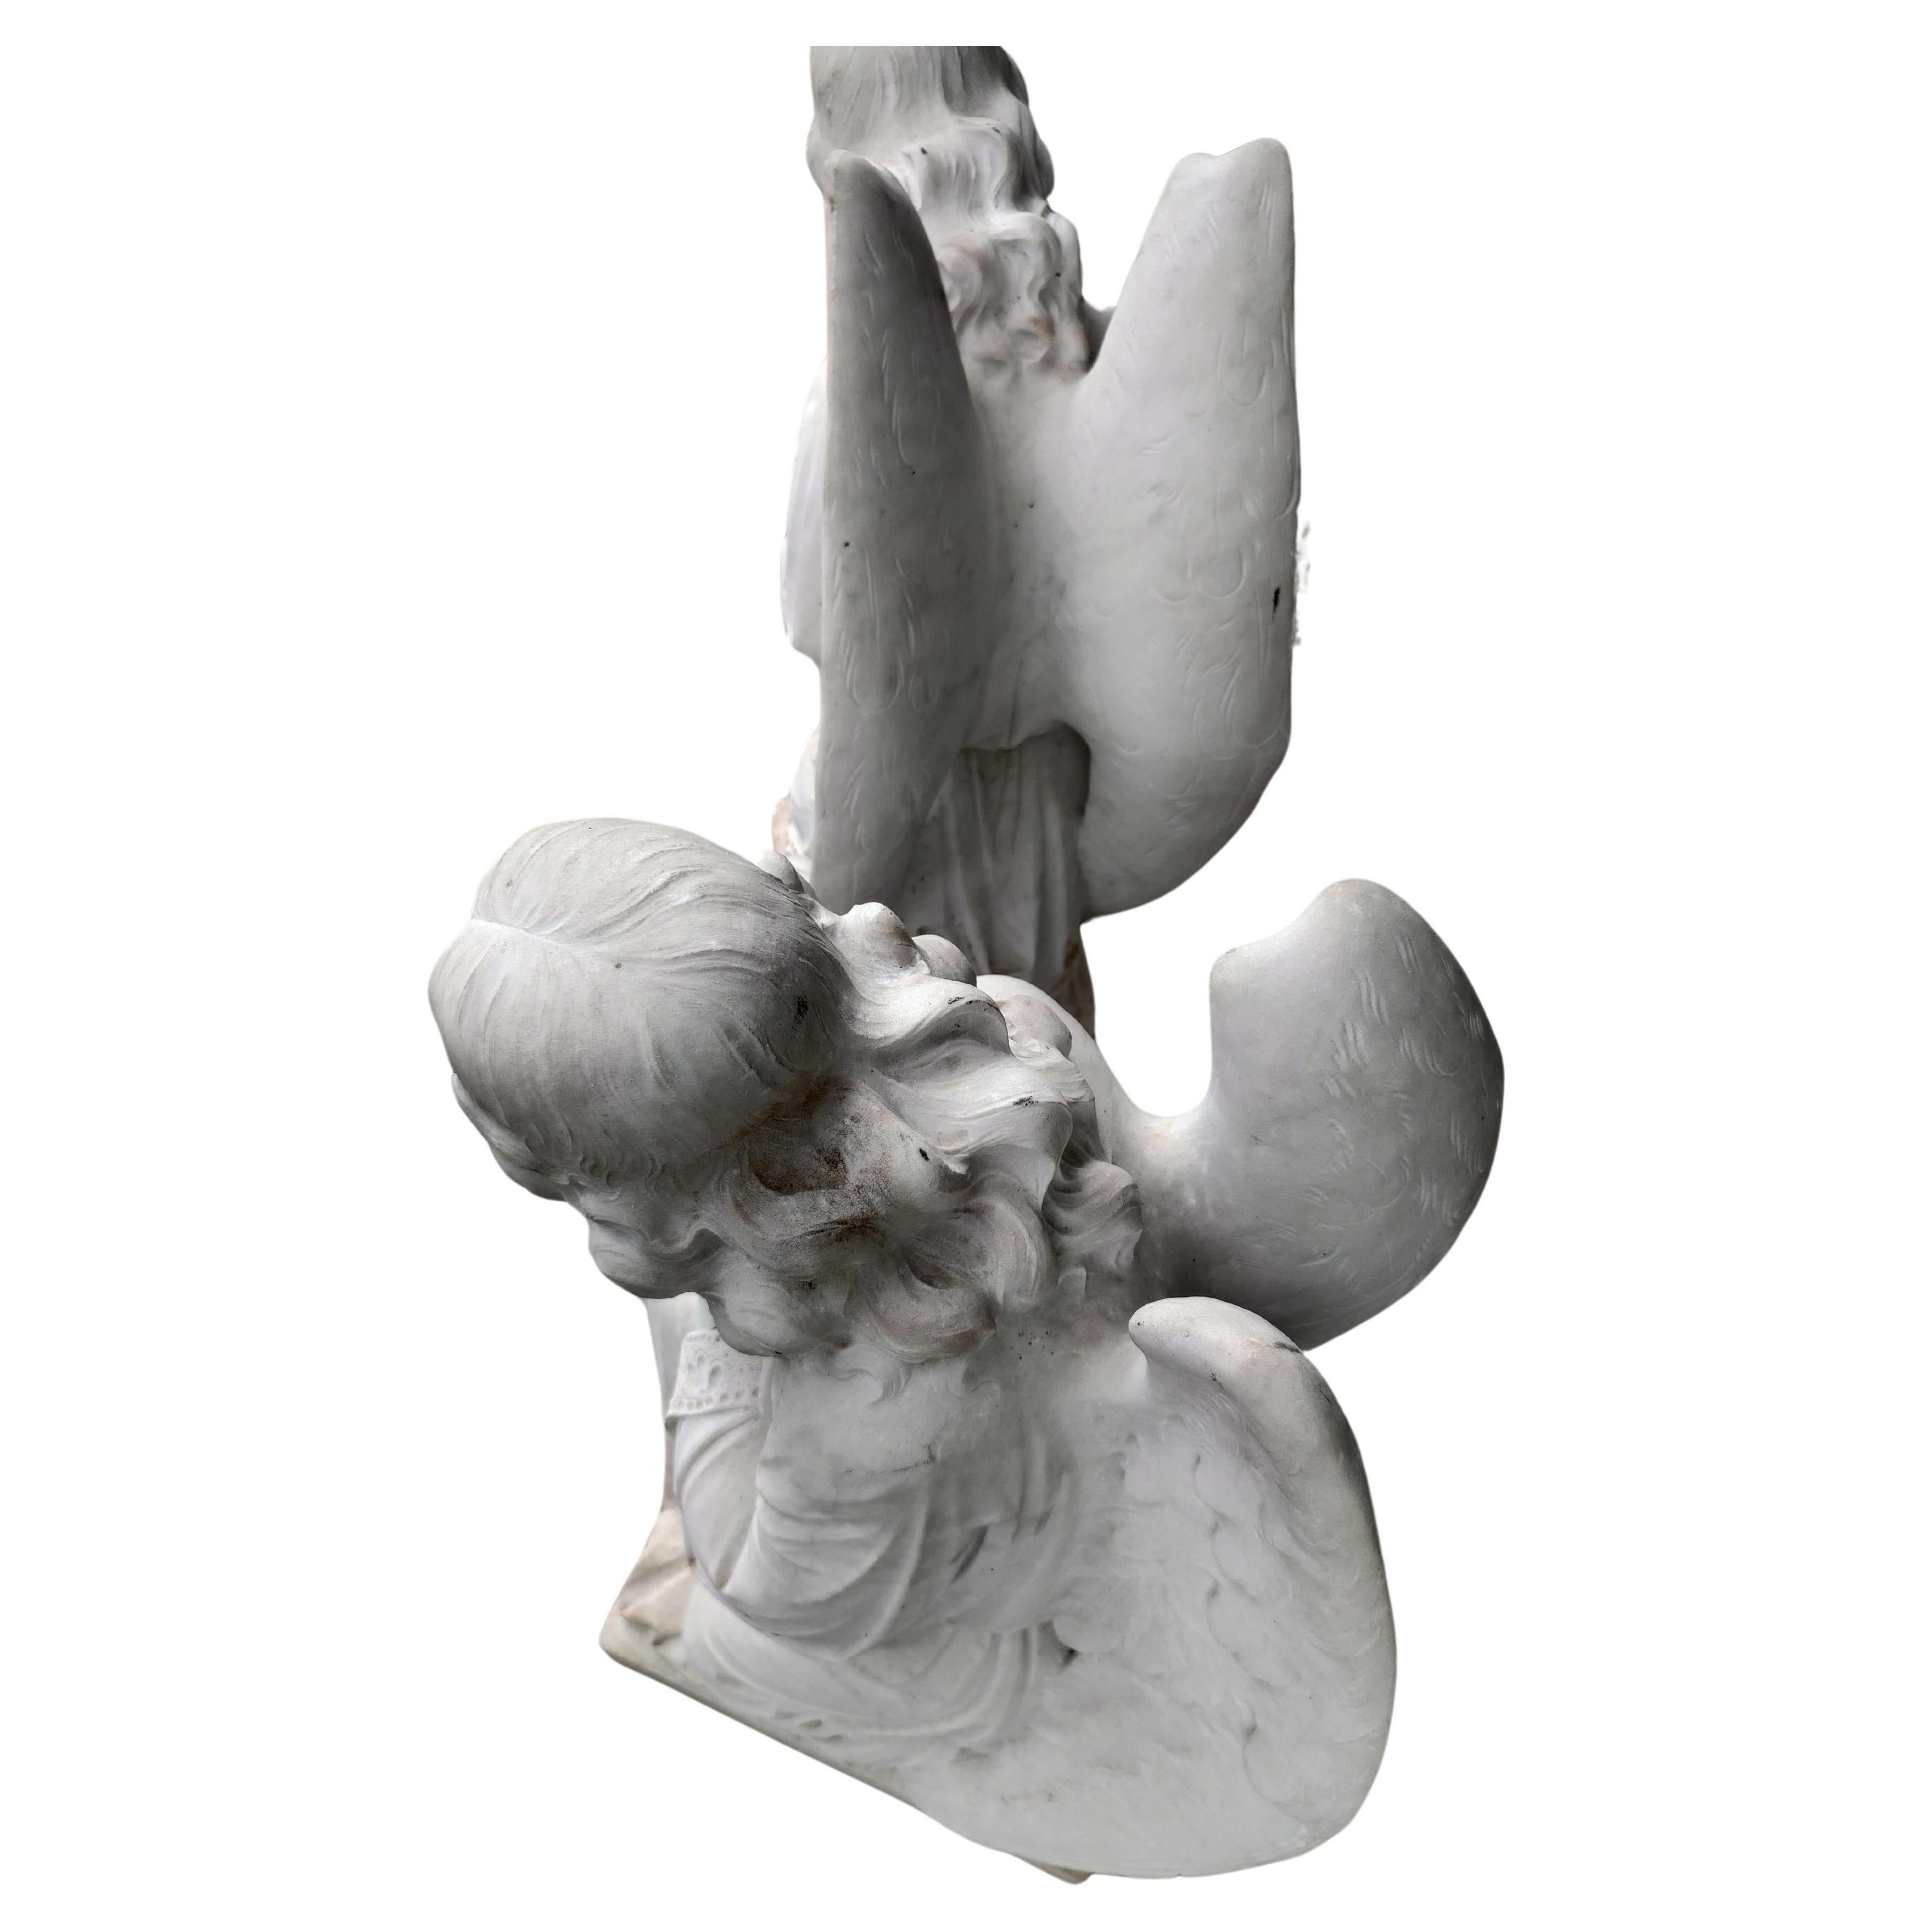 Erstaunliches Paar handgemeißelter Marmorstatuen eines knienden, betenden Schutzengelpaares. Etwa in den 1920er Jahren in Italien aus Carrara-Marmor handgefertigt. Diese wurden mehrere Jahre lang gelagert und erst kürzlich auf den Markt gebracht. In